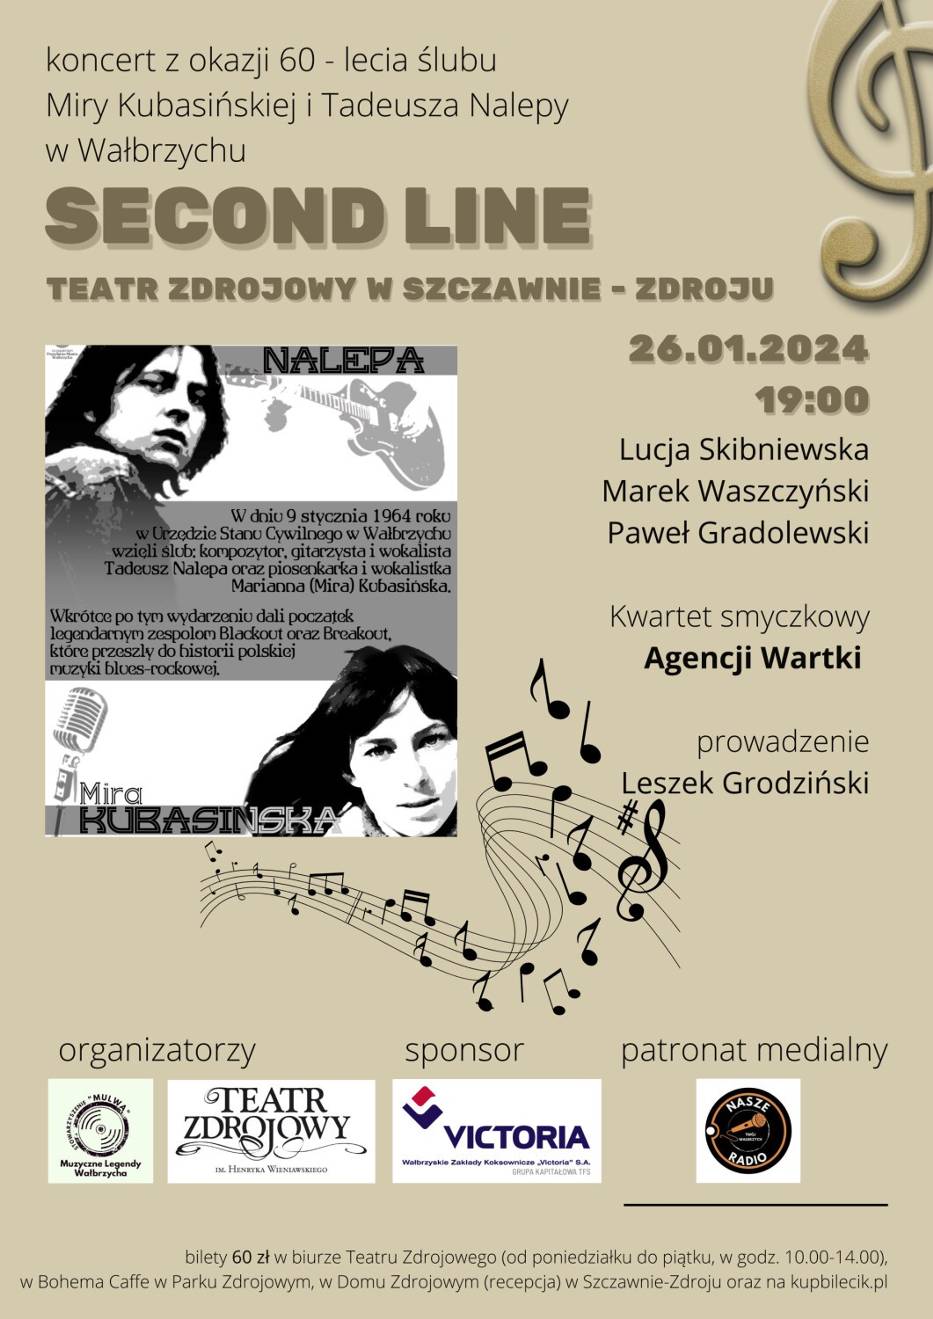 Koncert z okazji 60-lecia wydarzenia odbędzie się w 26 stycznia w Szczawnie-Zdroju